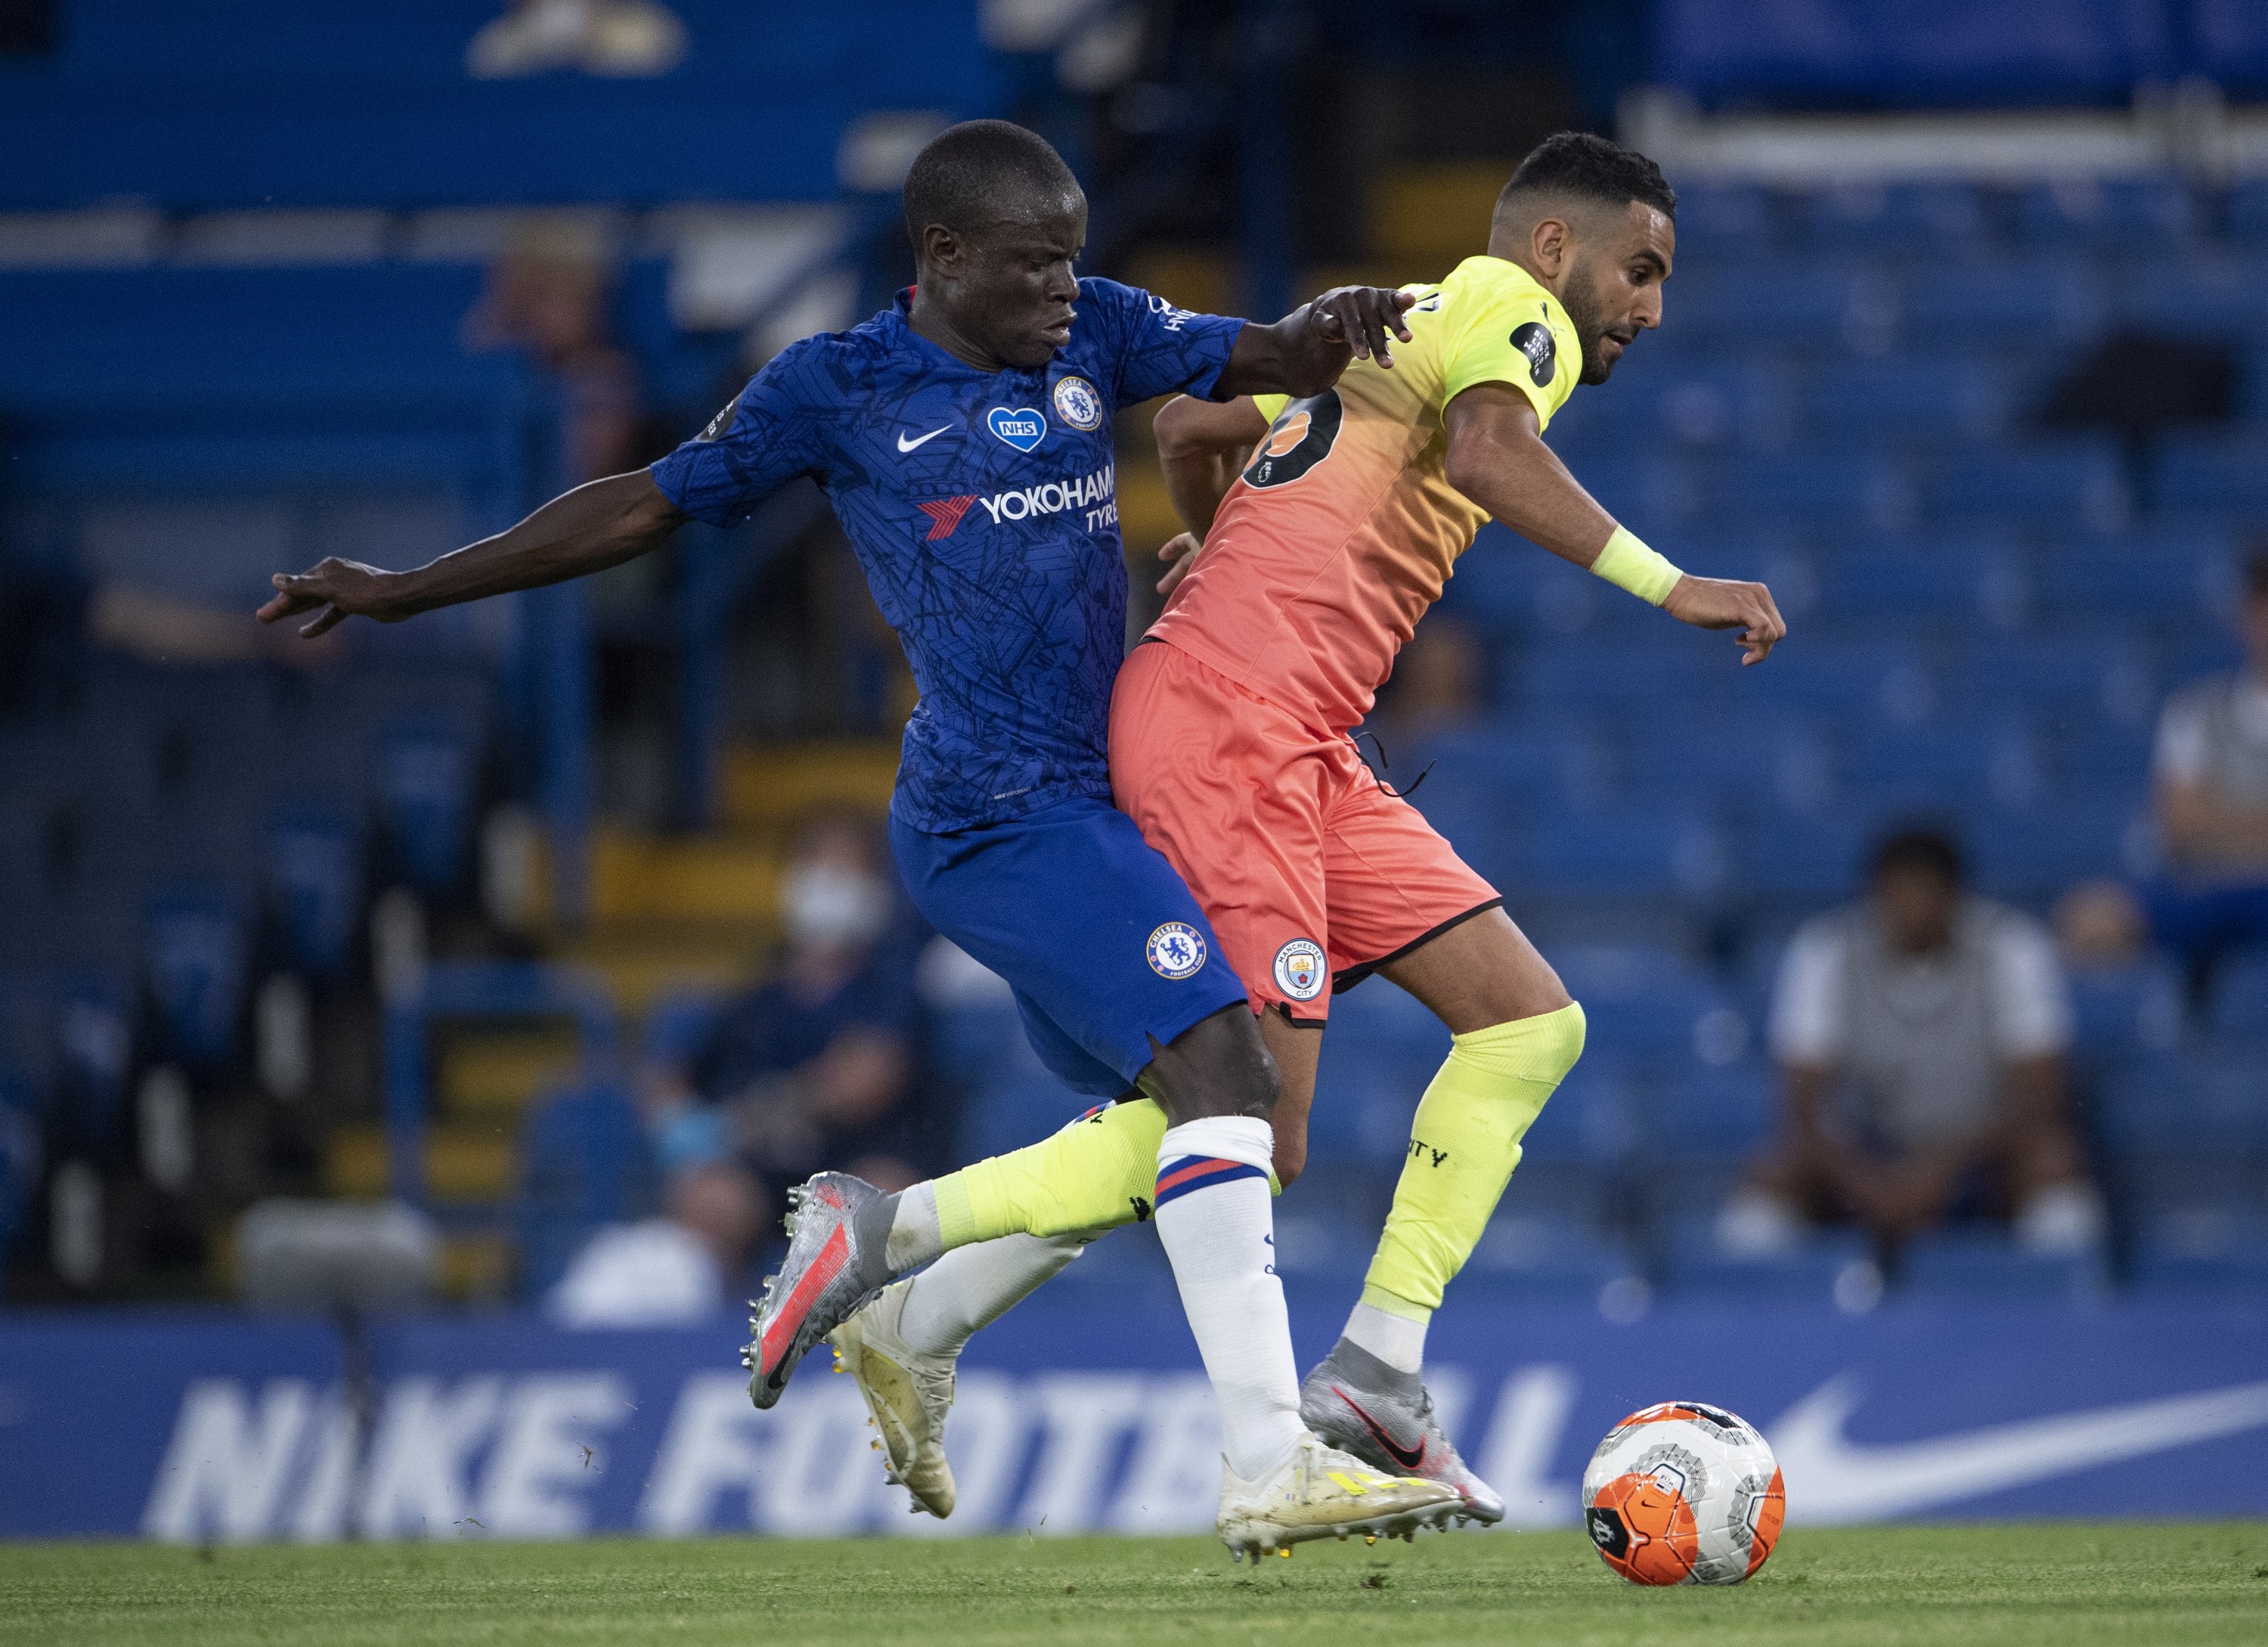 N'Golo Kante dari Chelsea dan Riyad Mahrez dari Manchester City saat pertandingan Premier League di Stamford Bridge, London, UK, 25 Juni 2020. (Foto Getty Images)